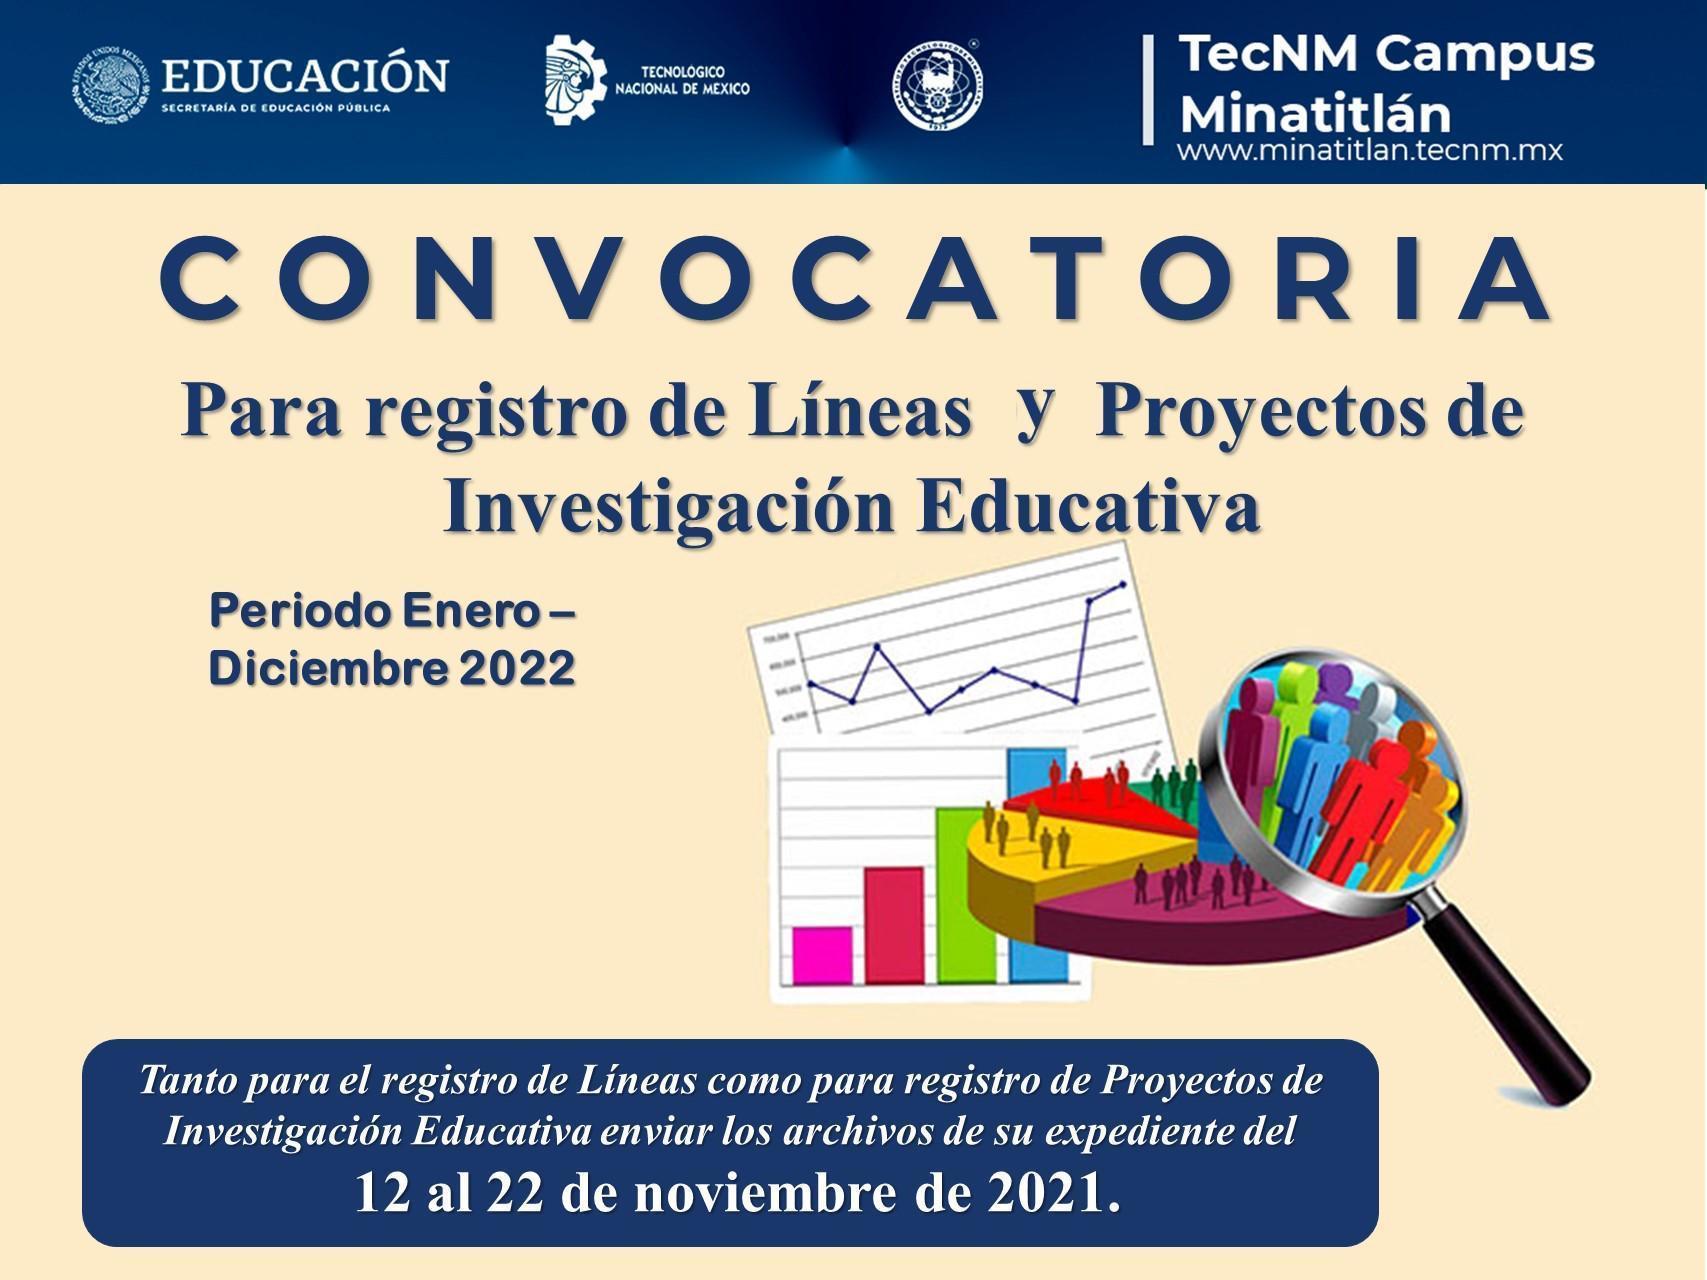 CONVOCATORIA: PARA REGISTRO DE LÍNEAS Y PROYECTOS DE INVESTIGACIÓN EDUCATIVA (PERIODO ENERO – DICIEMBRE 2022)